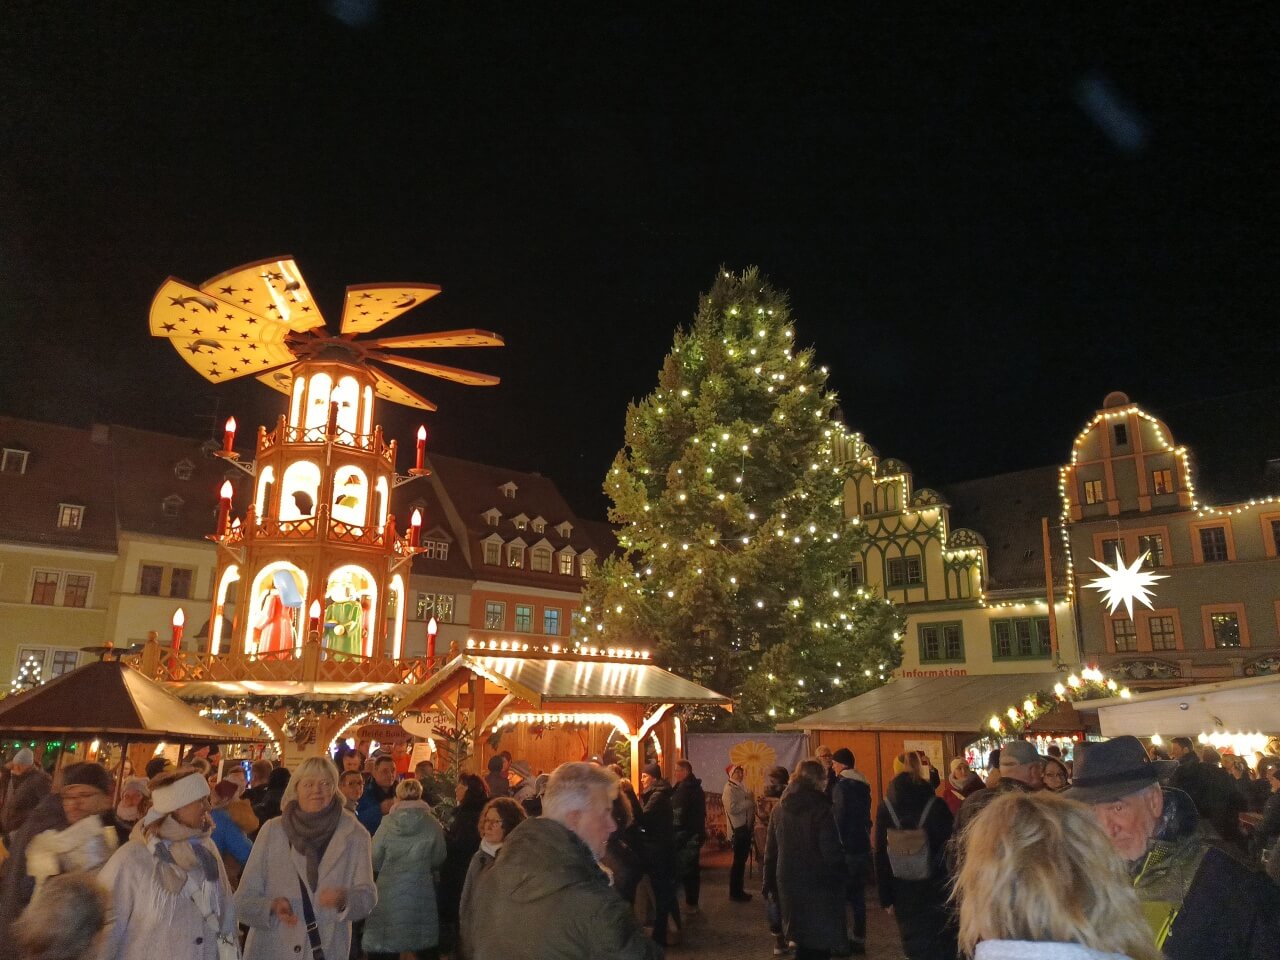 Weihnachtsmarkt Weimar - Weihnachtsmarkt am Marktplatz mit Pyramide und Weihnachtsbaum